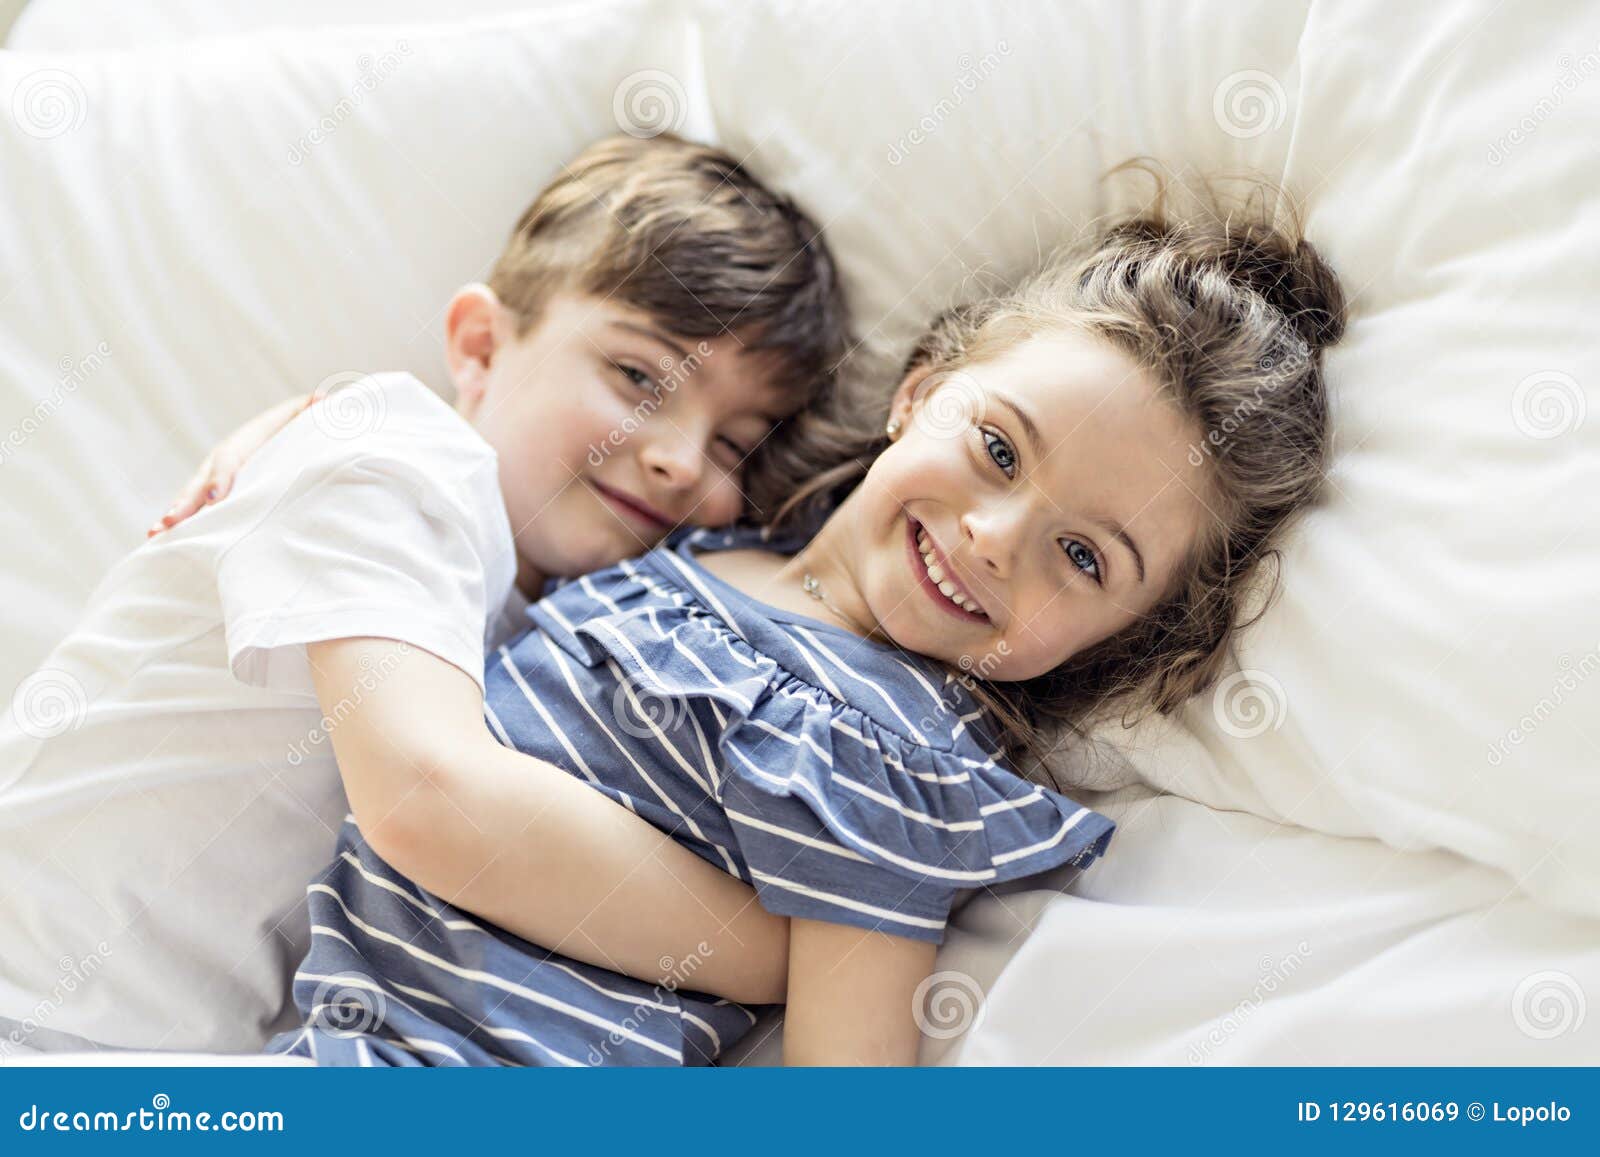 Пришел к сестре в постель. Братик и сестричка в кровати. Фотосессия брат и сестра. С сестренкой в постели. Мальчик лежит на маме.